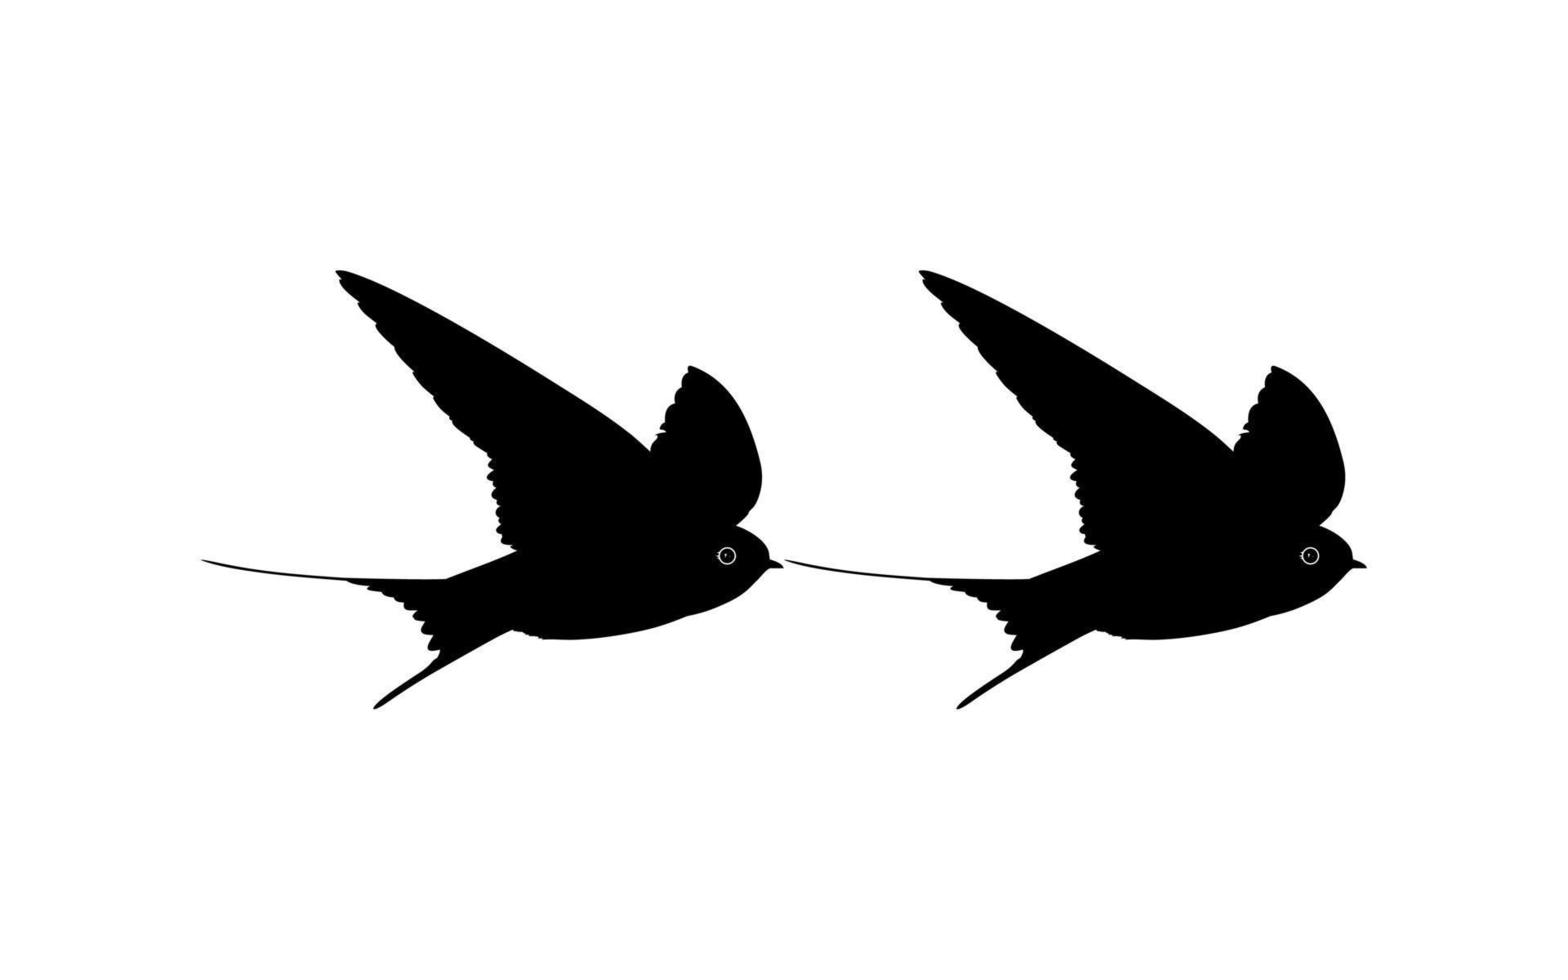 par de la silueta de pájaro golondrina voladora para logotipo, pictograma, sitio web. ilustración de arte o elemento de diseño gráfico. vector